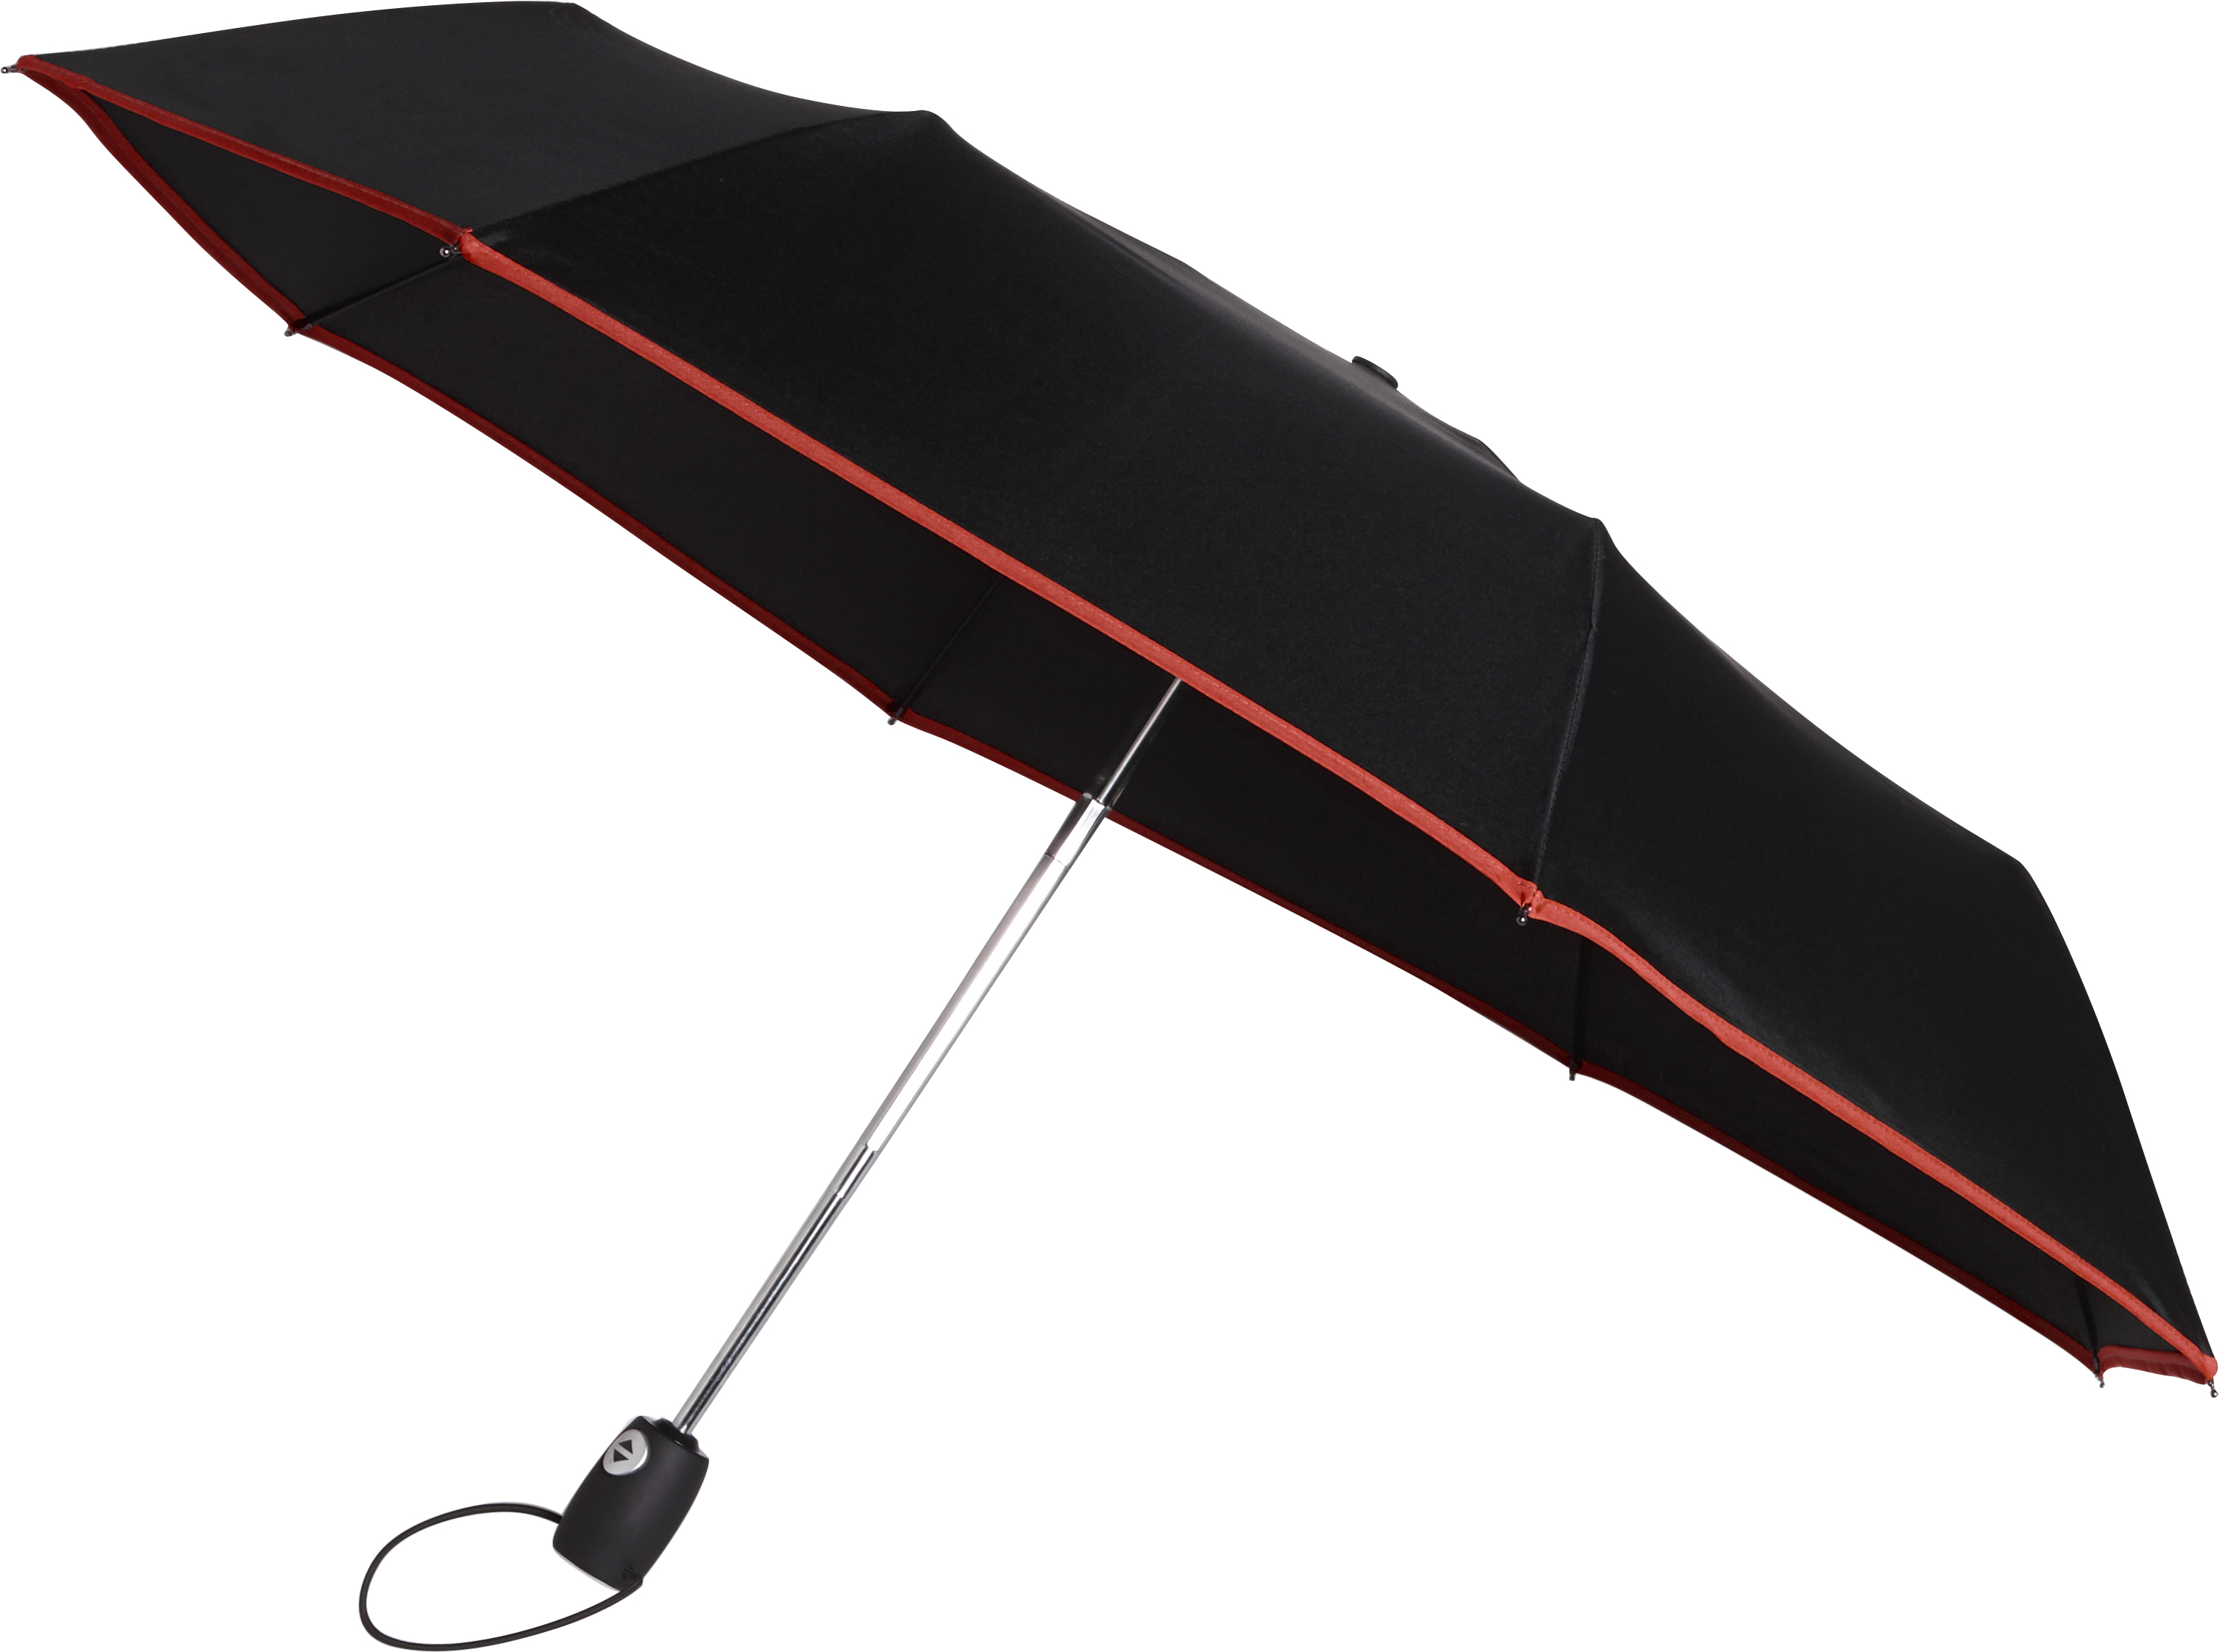 004939 008999999 3d045 ins pro01 fal - Automatic foldable umbrella